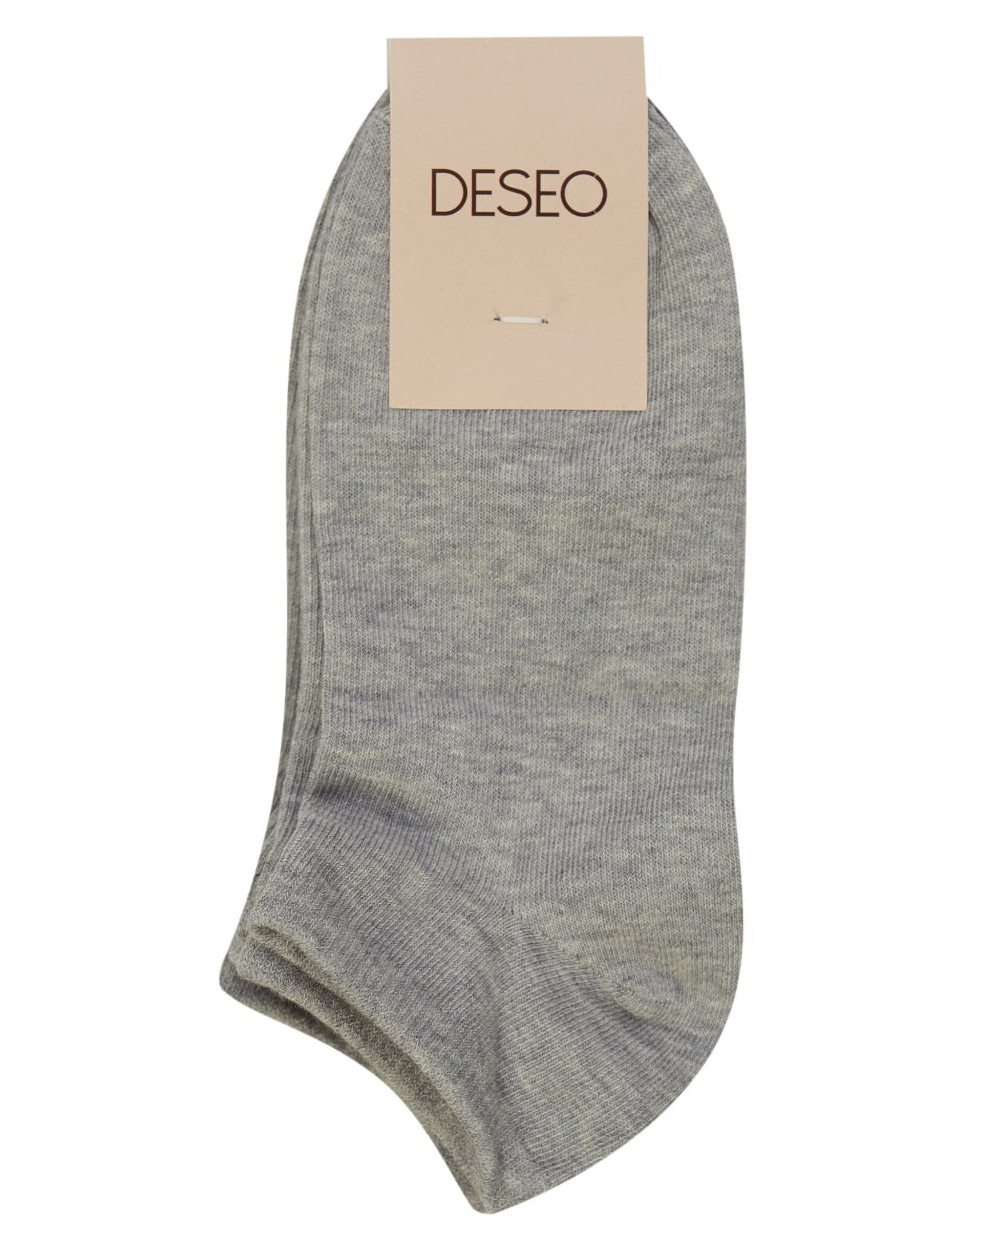 Комплект носков женских DESEO 2.1.2.20.04.17.00189 серых 38-40